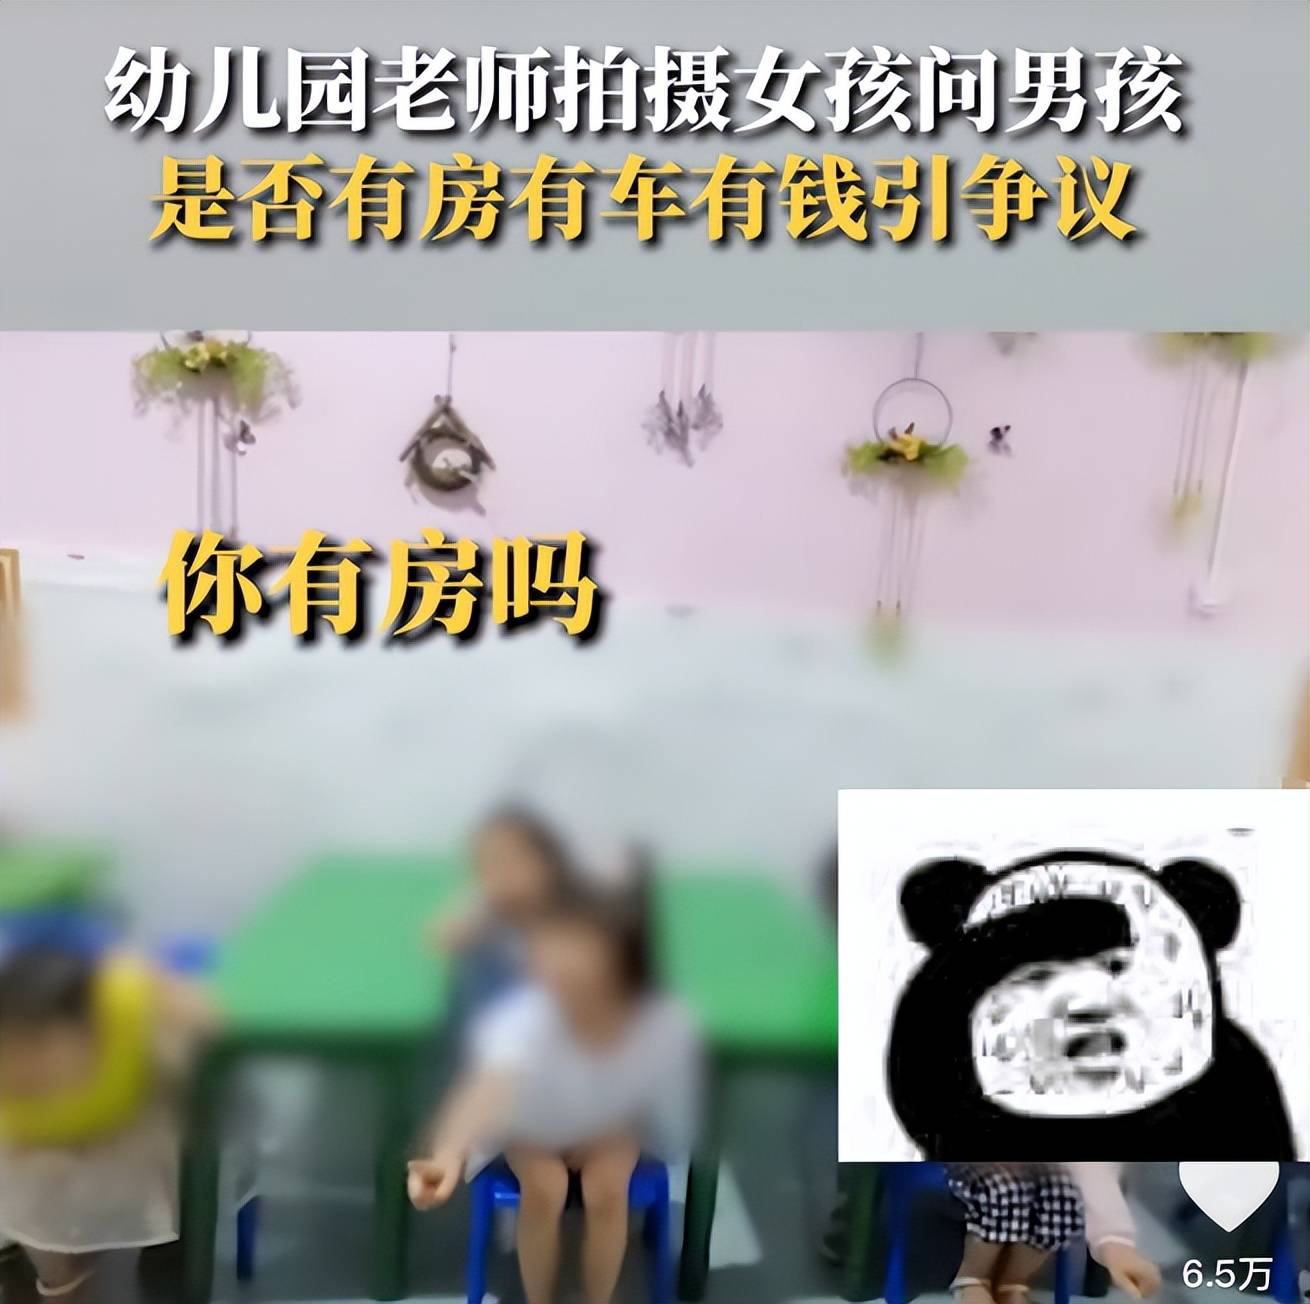 上海女幼师自称给男童喂避孕药后续,切莫让一时口嗨成为自身污点